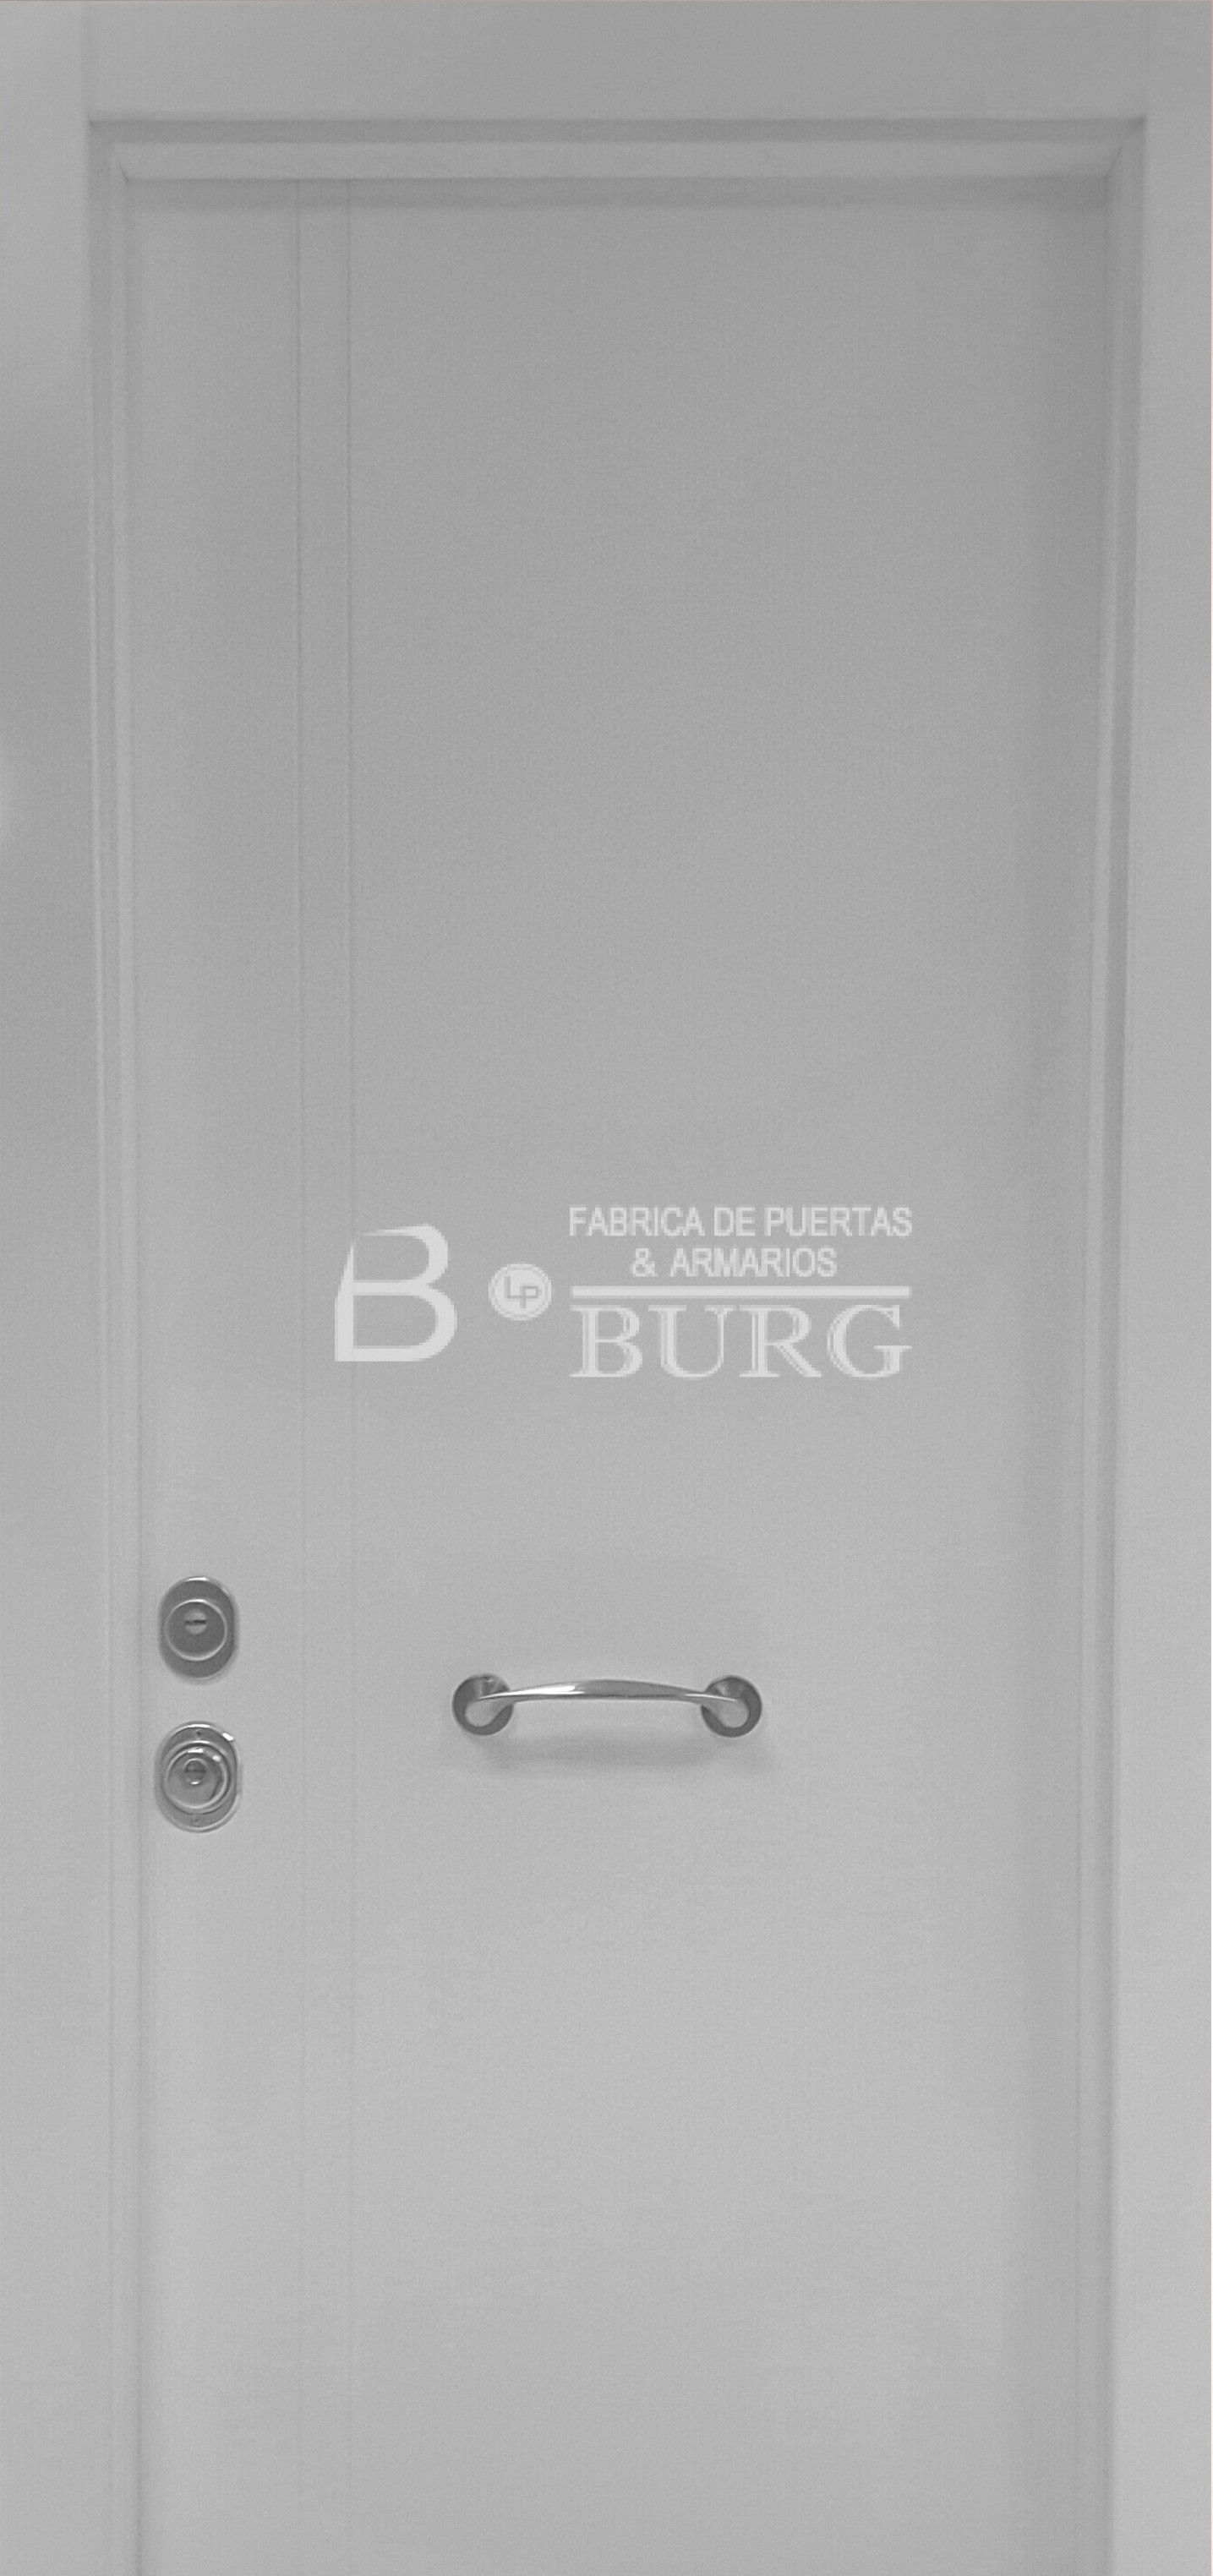 Modelo lacada Bonn: Catálogo de Puertas Burg LP